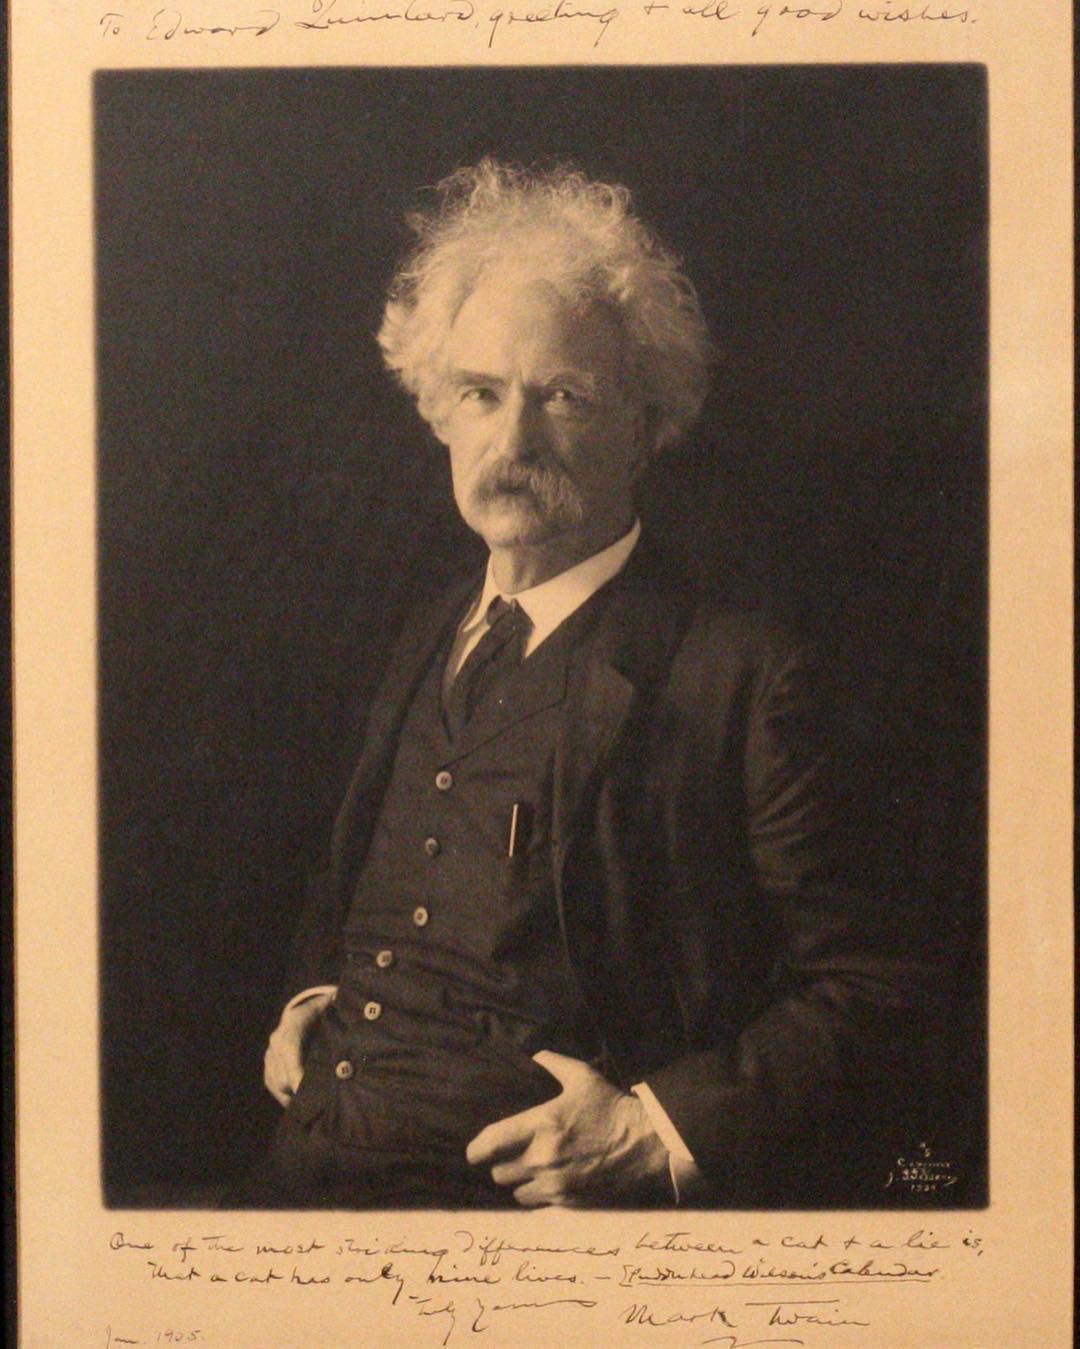 Mark Twain in Sepia Photogravure